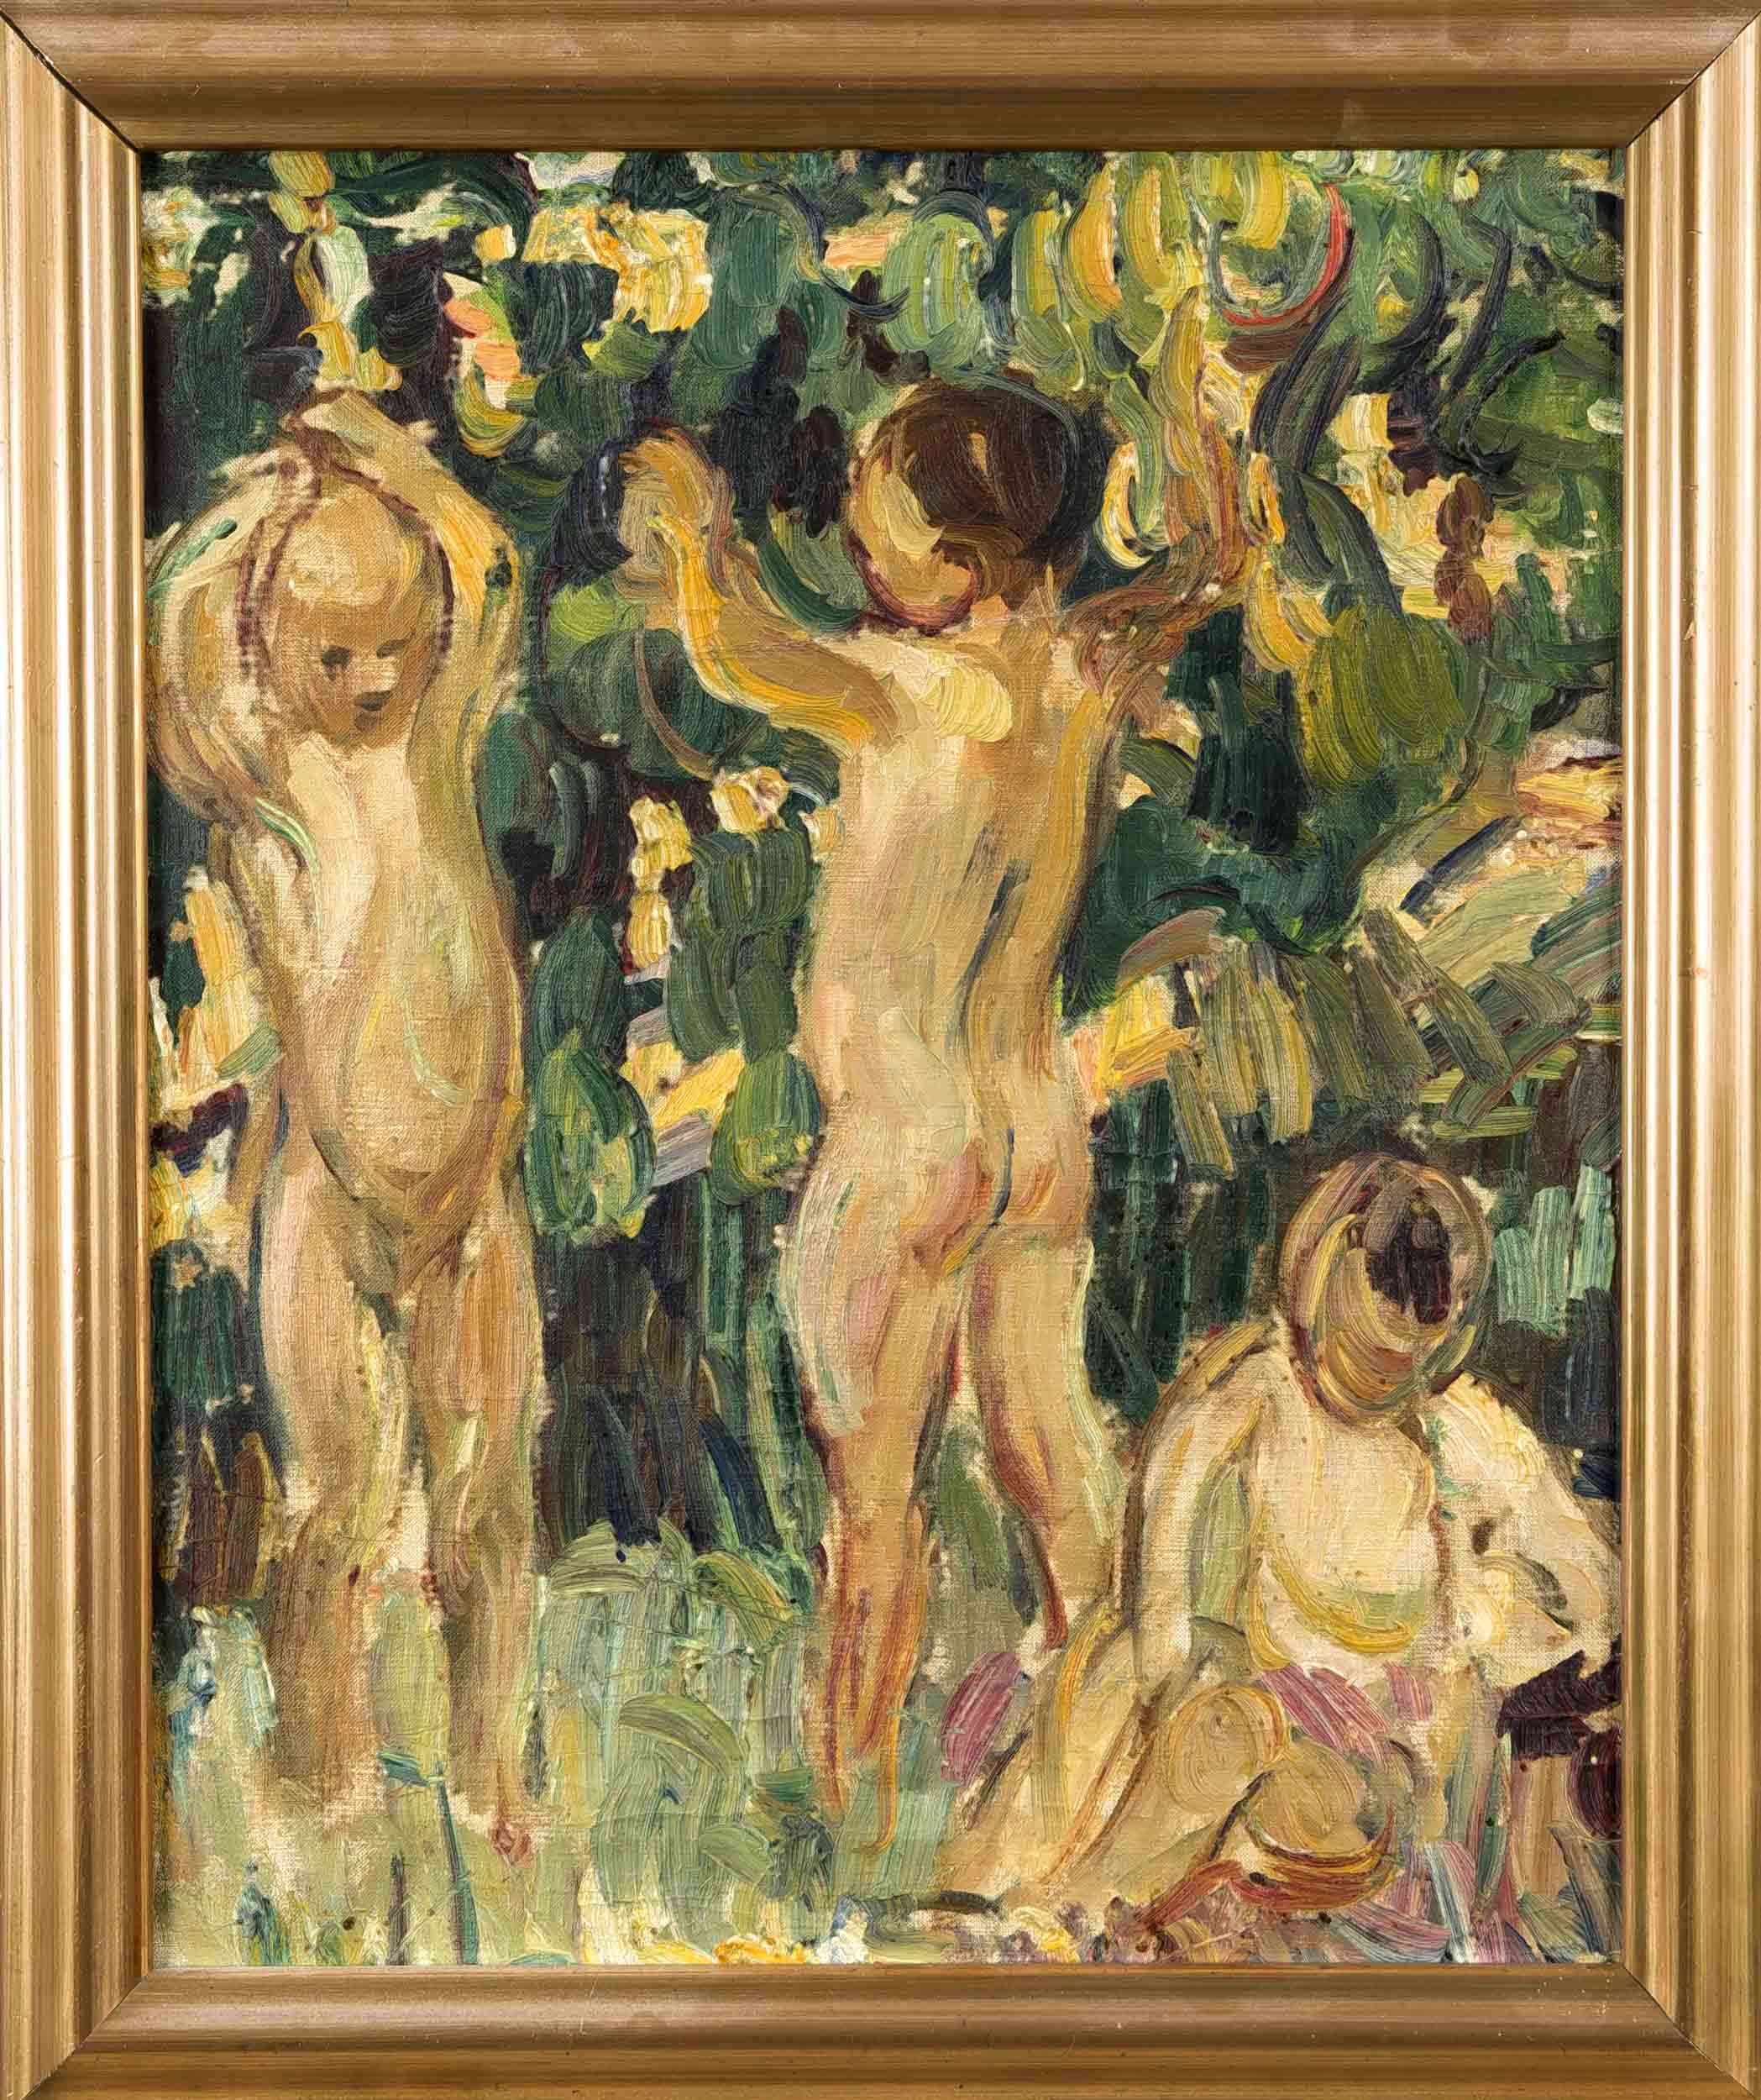 Artwork by Dora Hitz, Drei nackte, unter Bäumen spielende Kinder, mit breiten, raschen und pastos aufgetragenen Strichen skizzierte, impressionistische Szenerie, Made of oil on canvas